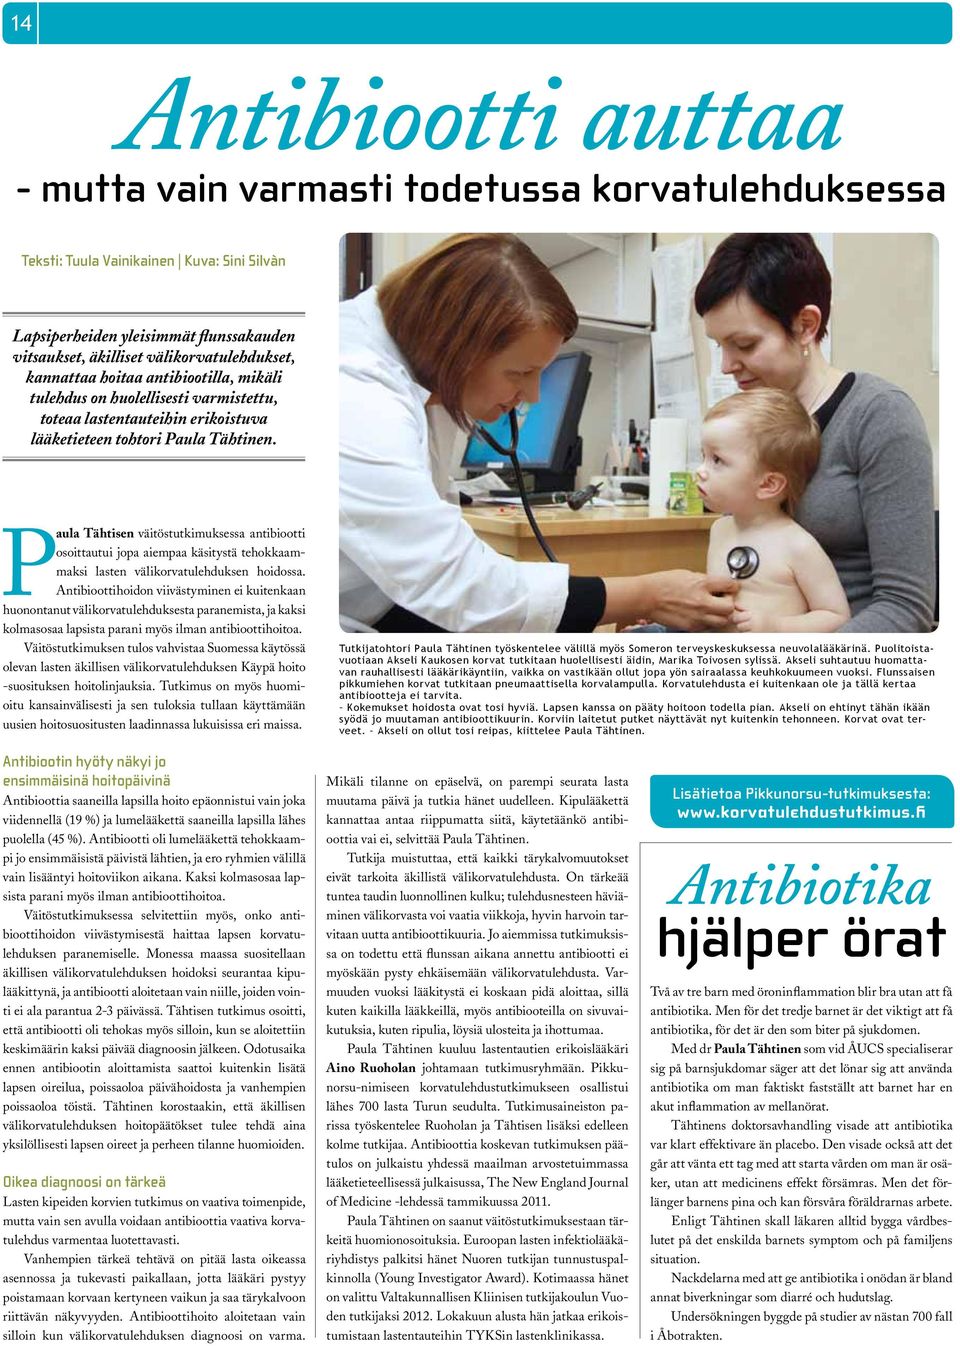 Paula Tähtisen väitöstutkimuksessa antibiootti osoittautui jopa aiempaa käsitystä tehokkaammaksi lasten välikorvatulehduksen hoidossa.